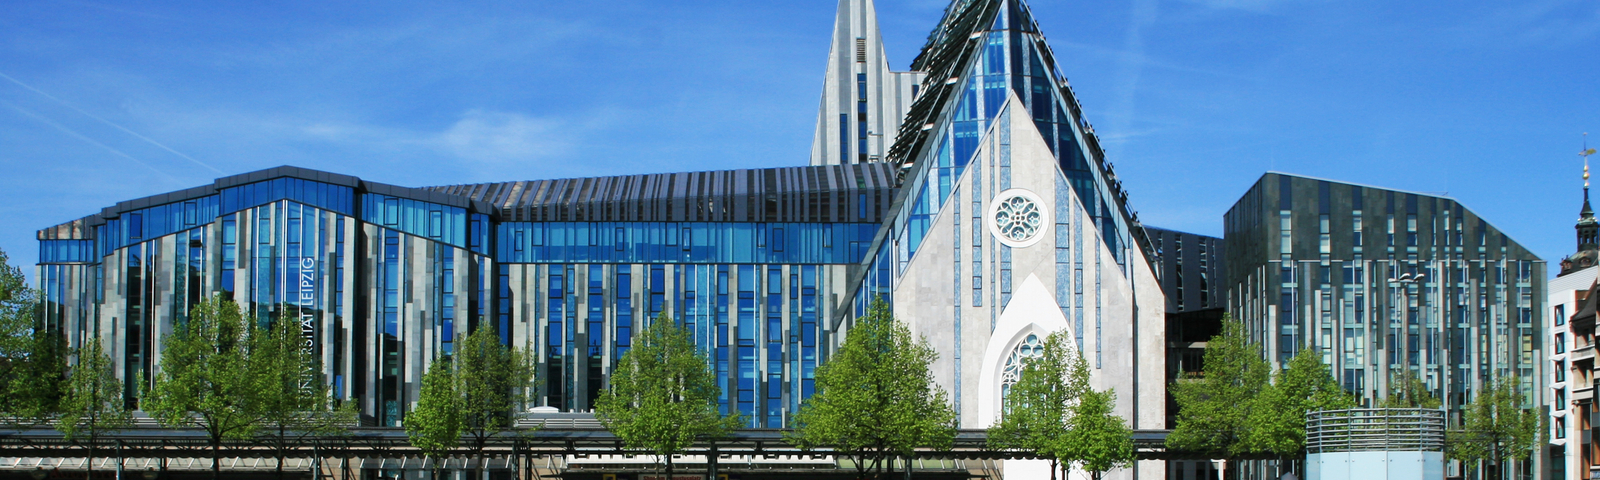 Referenz - Referenzbericht: Augustkirche/ Universität Leipzig, Leipzig